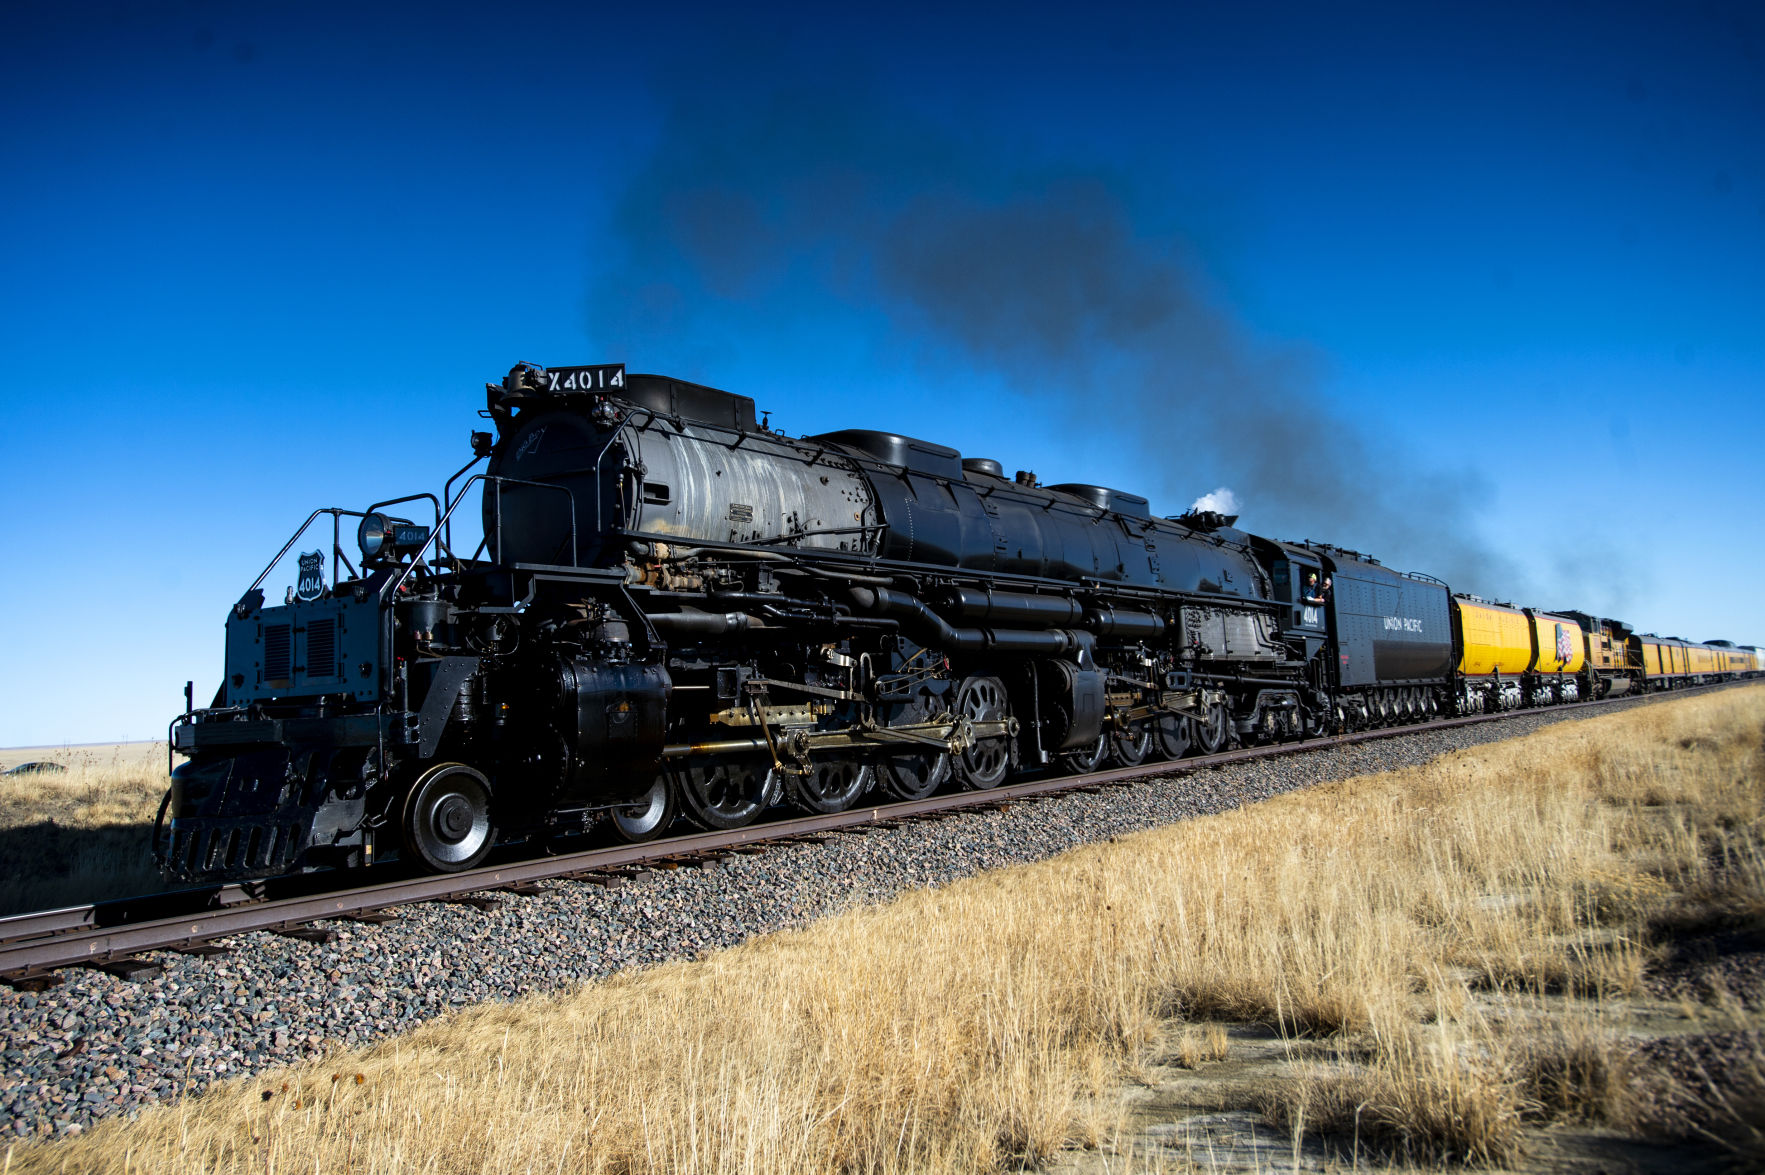 Big steam train фото 90